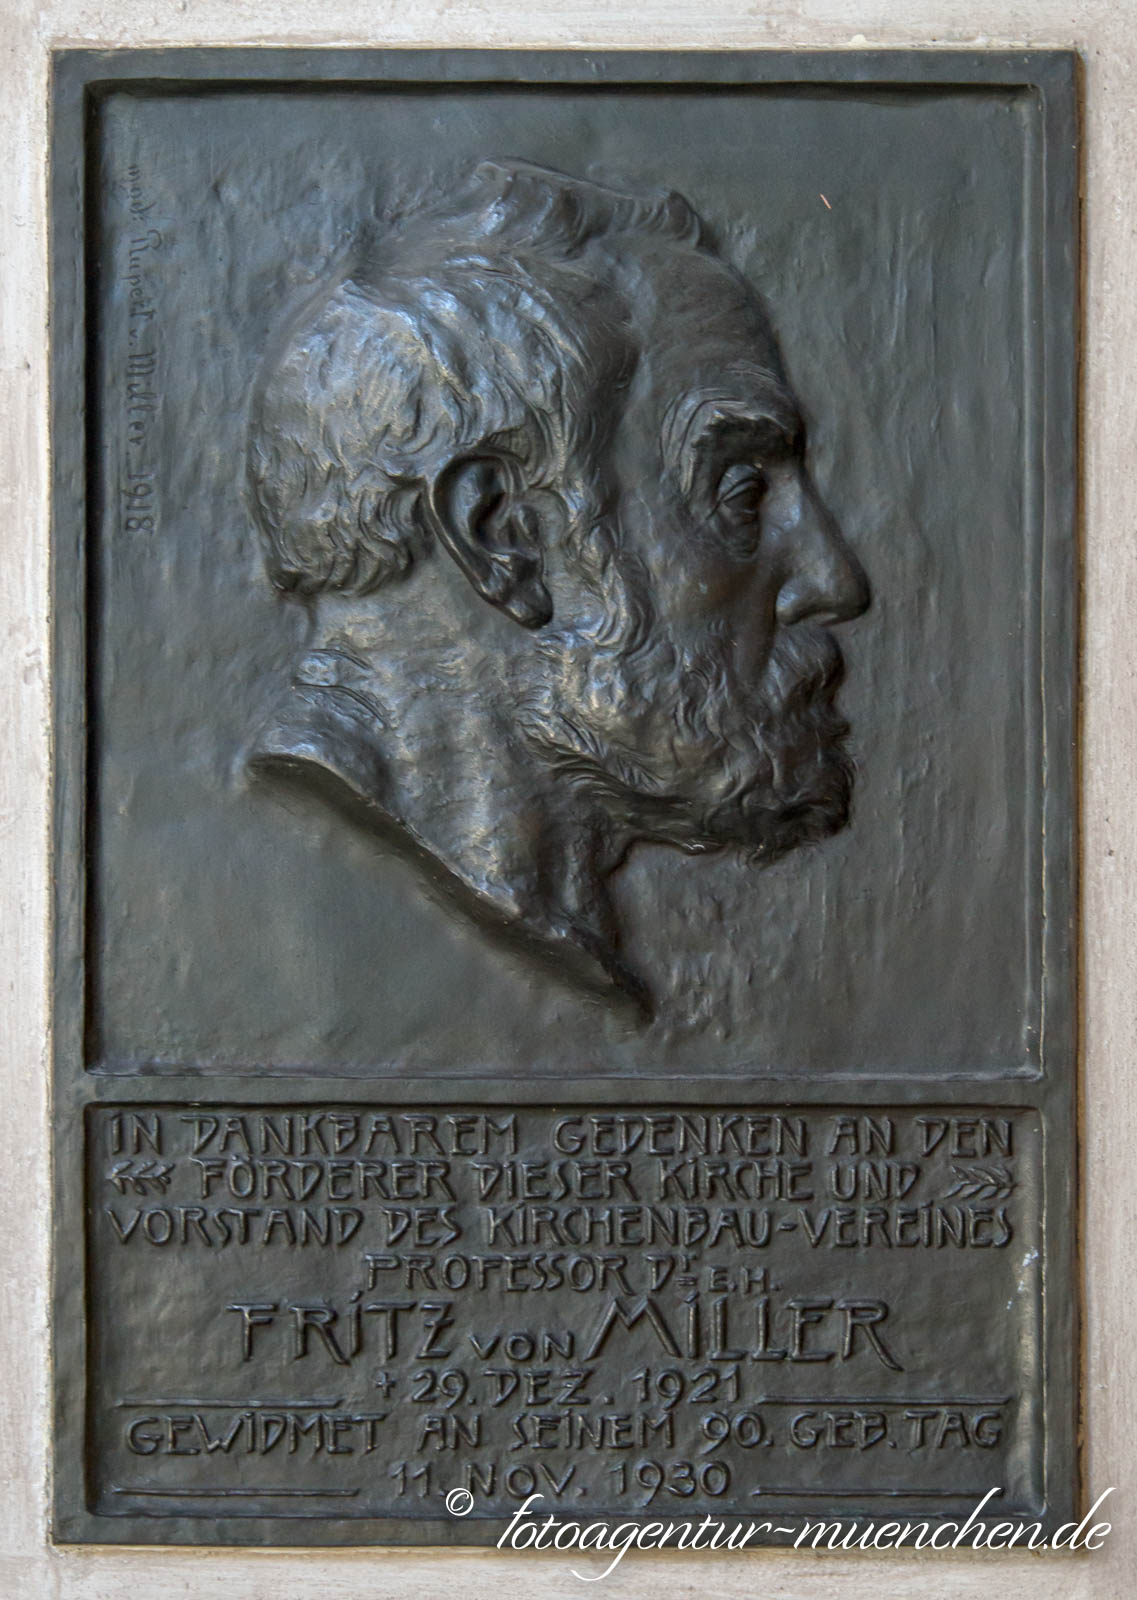 Gedenktafel für Fritz von Miller